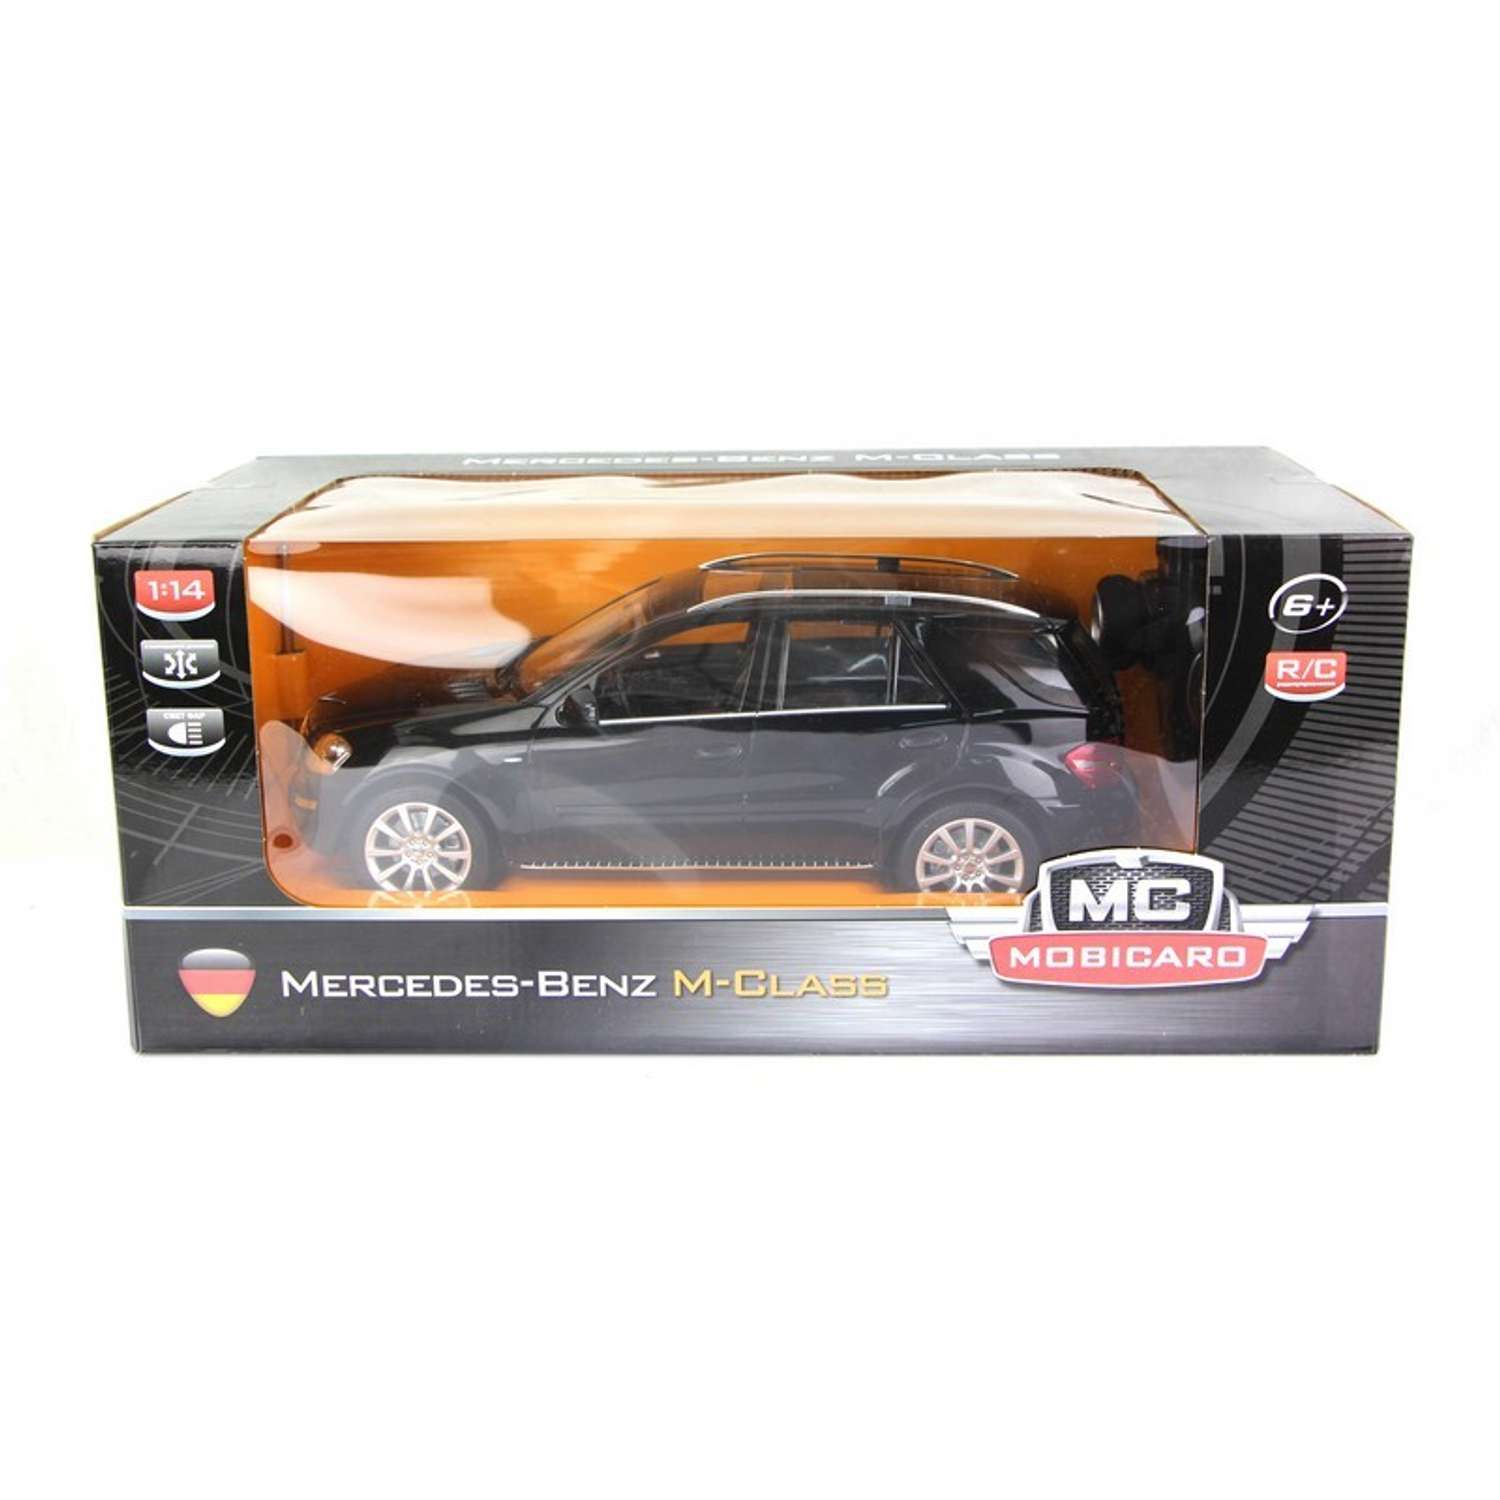 Машинка р/у Mobicaro Mercedes ML (черная) 1:14 34 см - фото 2